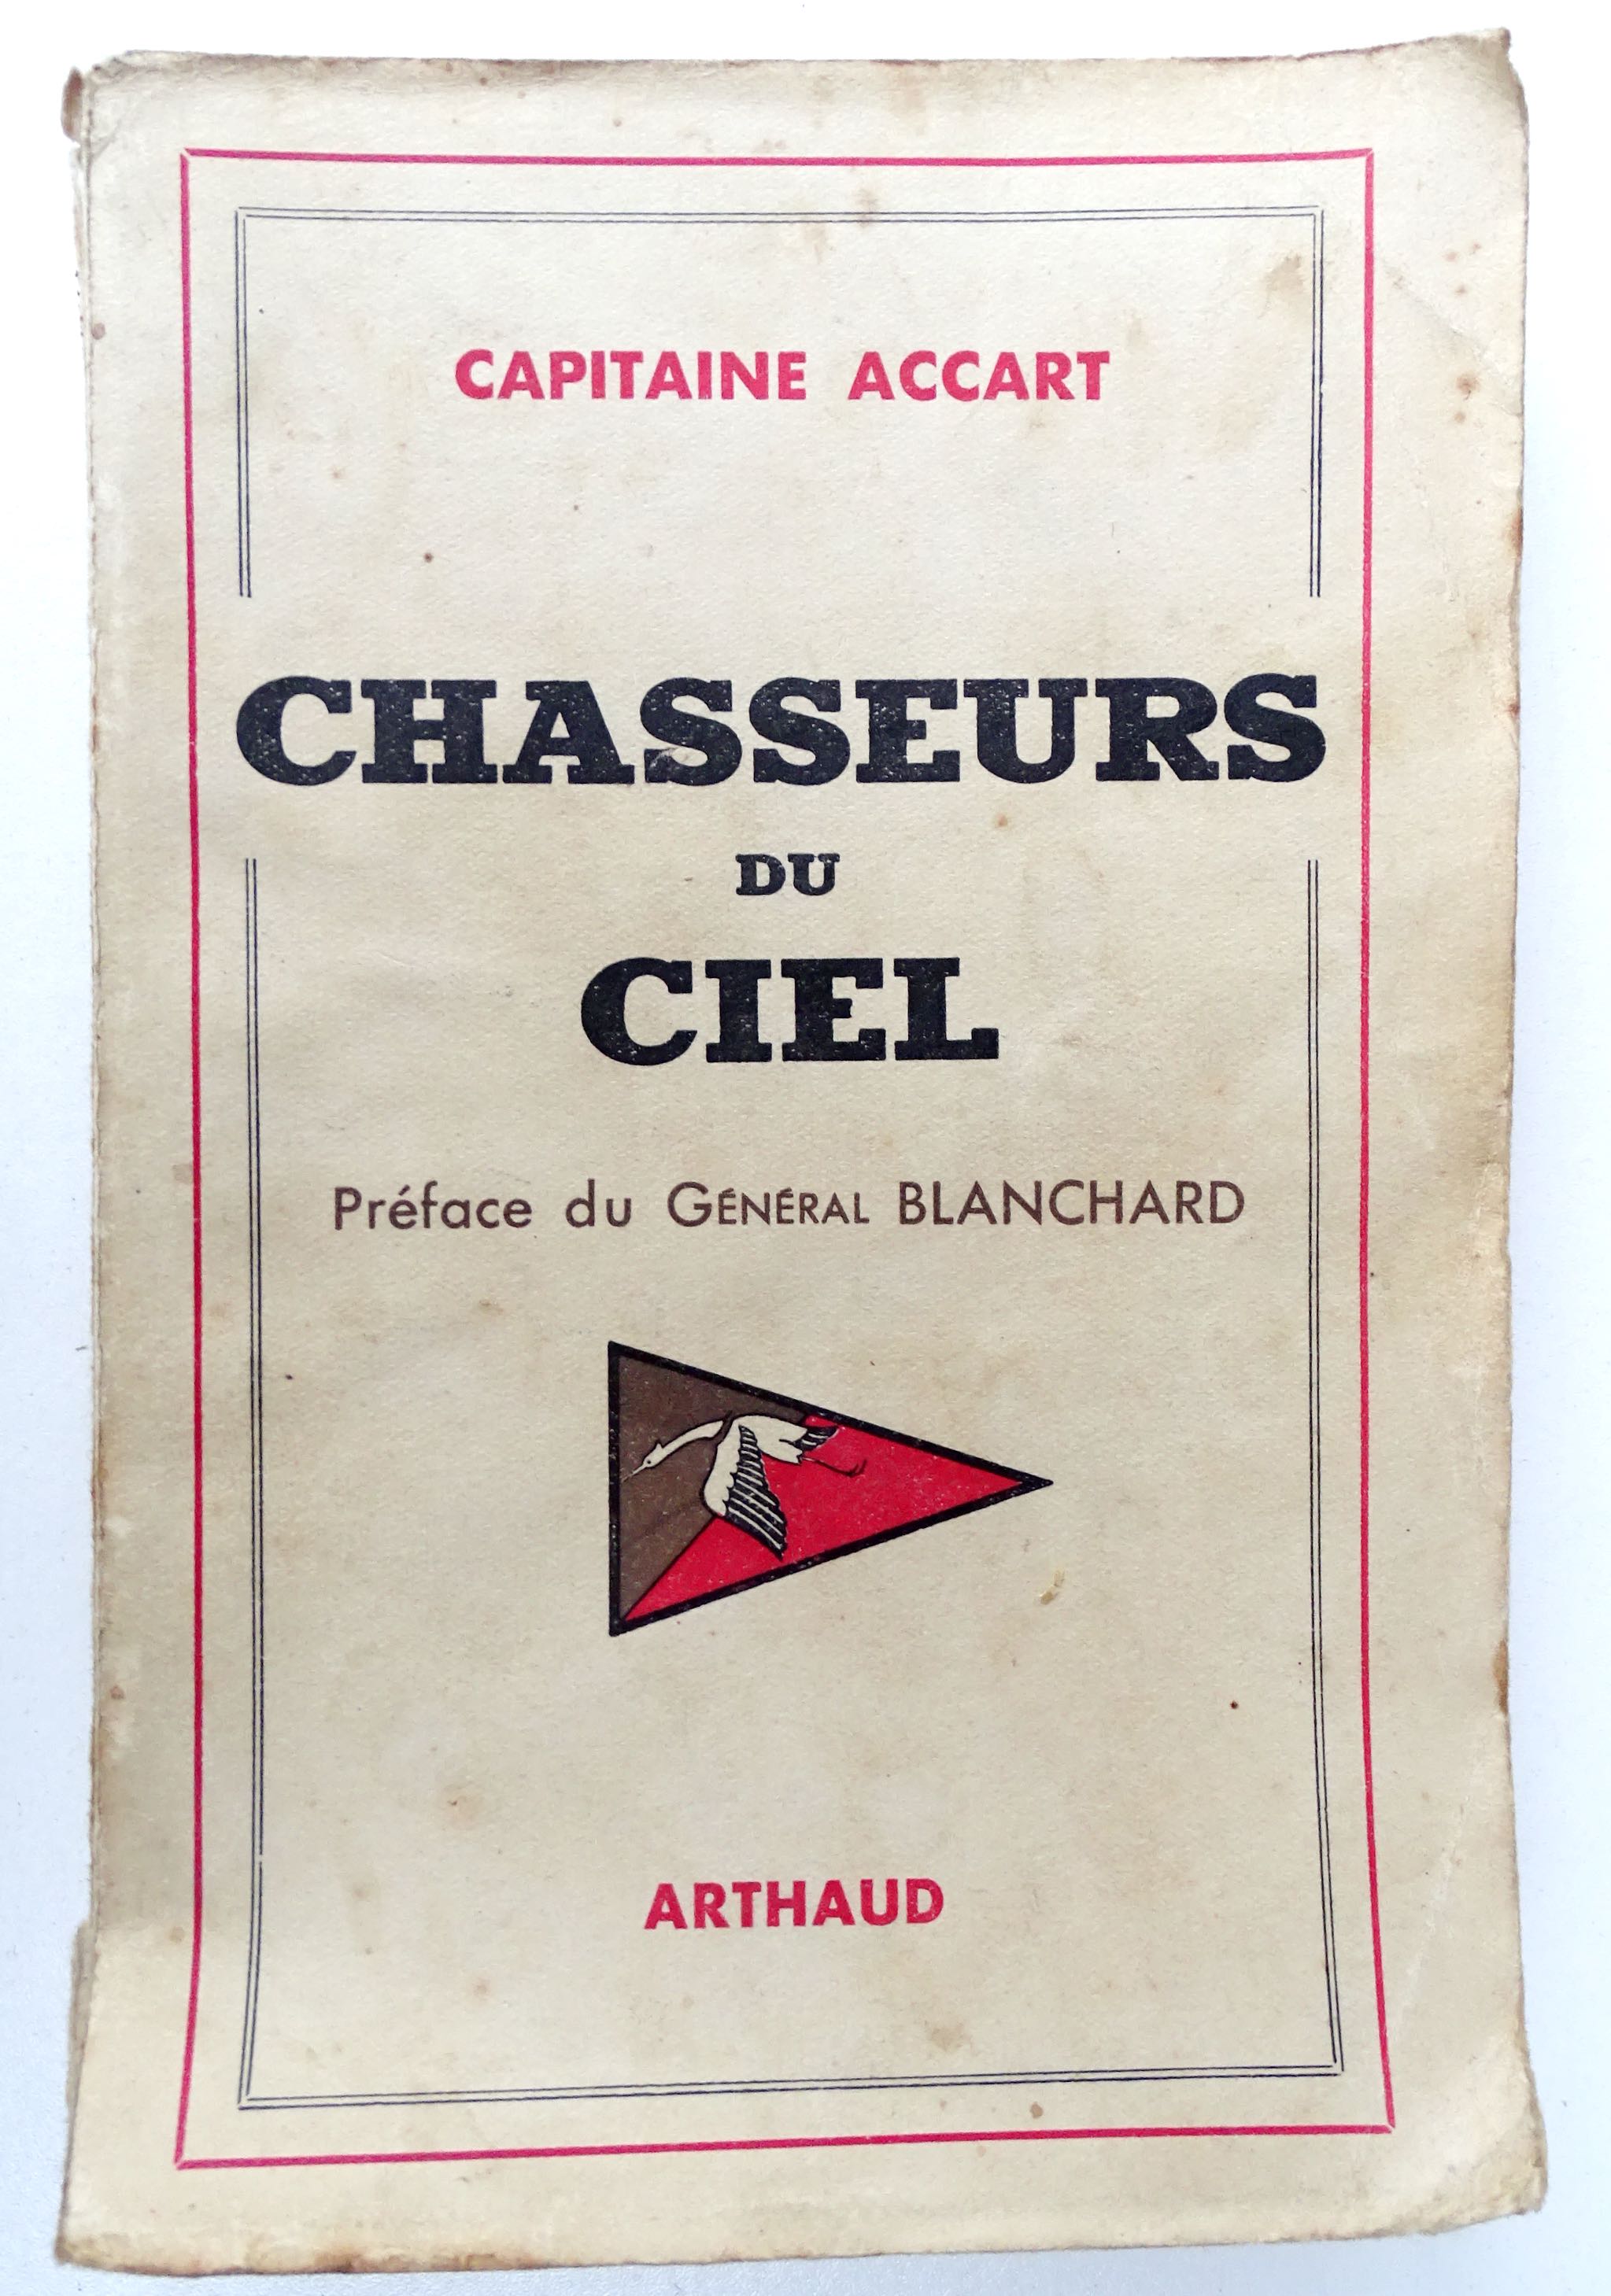 Chasseurs du ciel Capitaine Accart. France 40 récit de pilote.